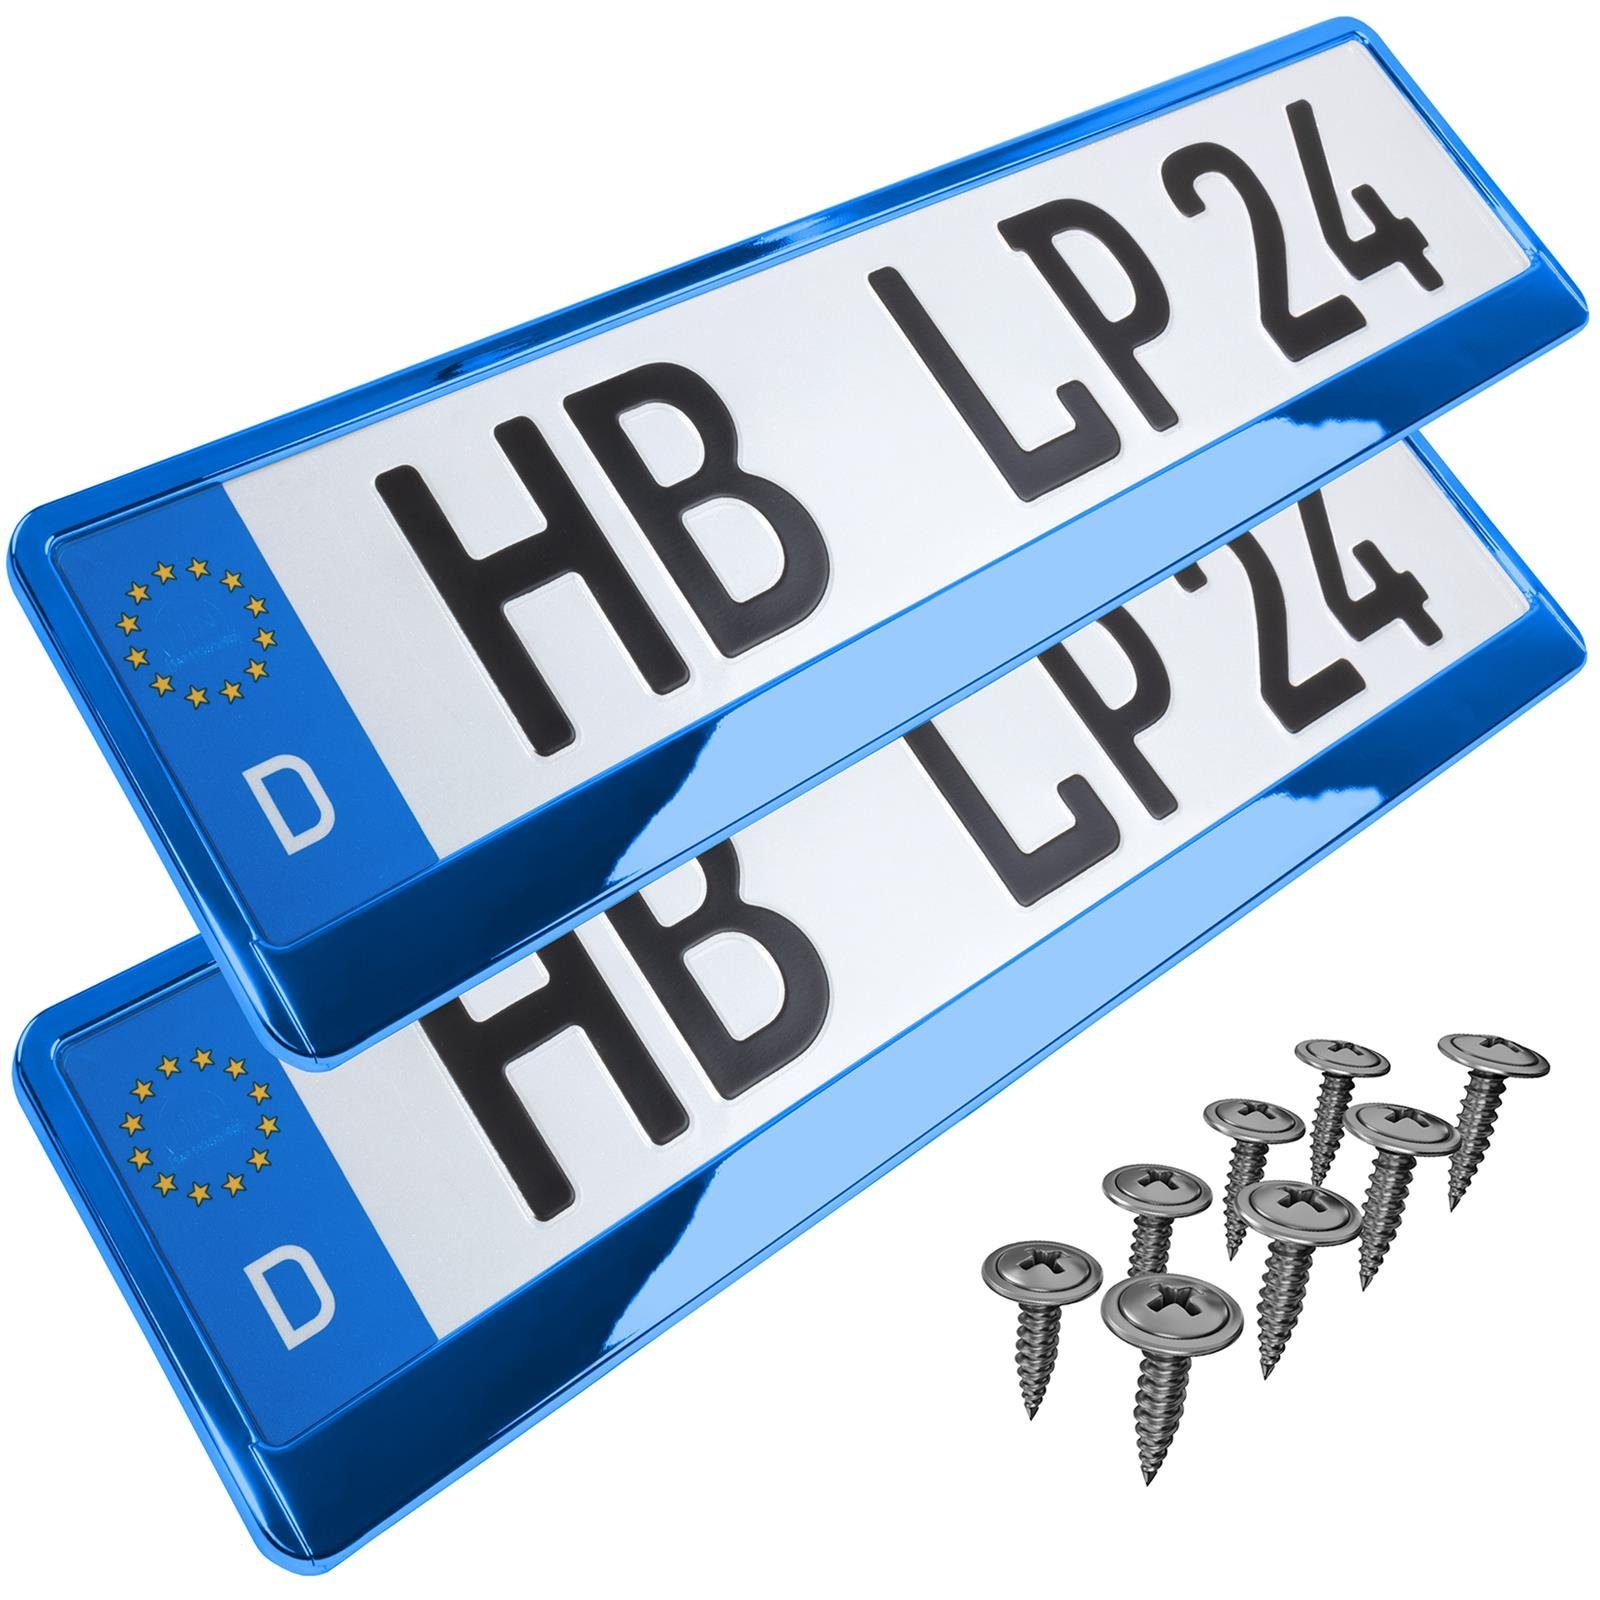 L & P Car Design Kennzeichenhalter für Auto in Blau-Chrom